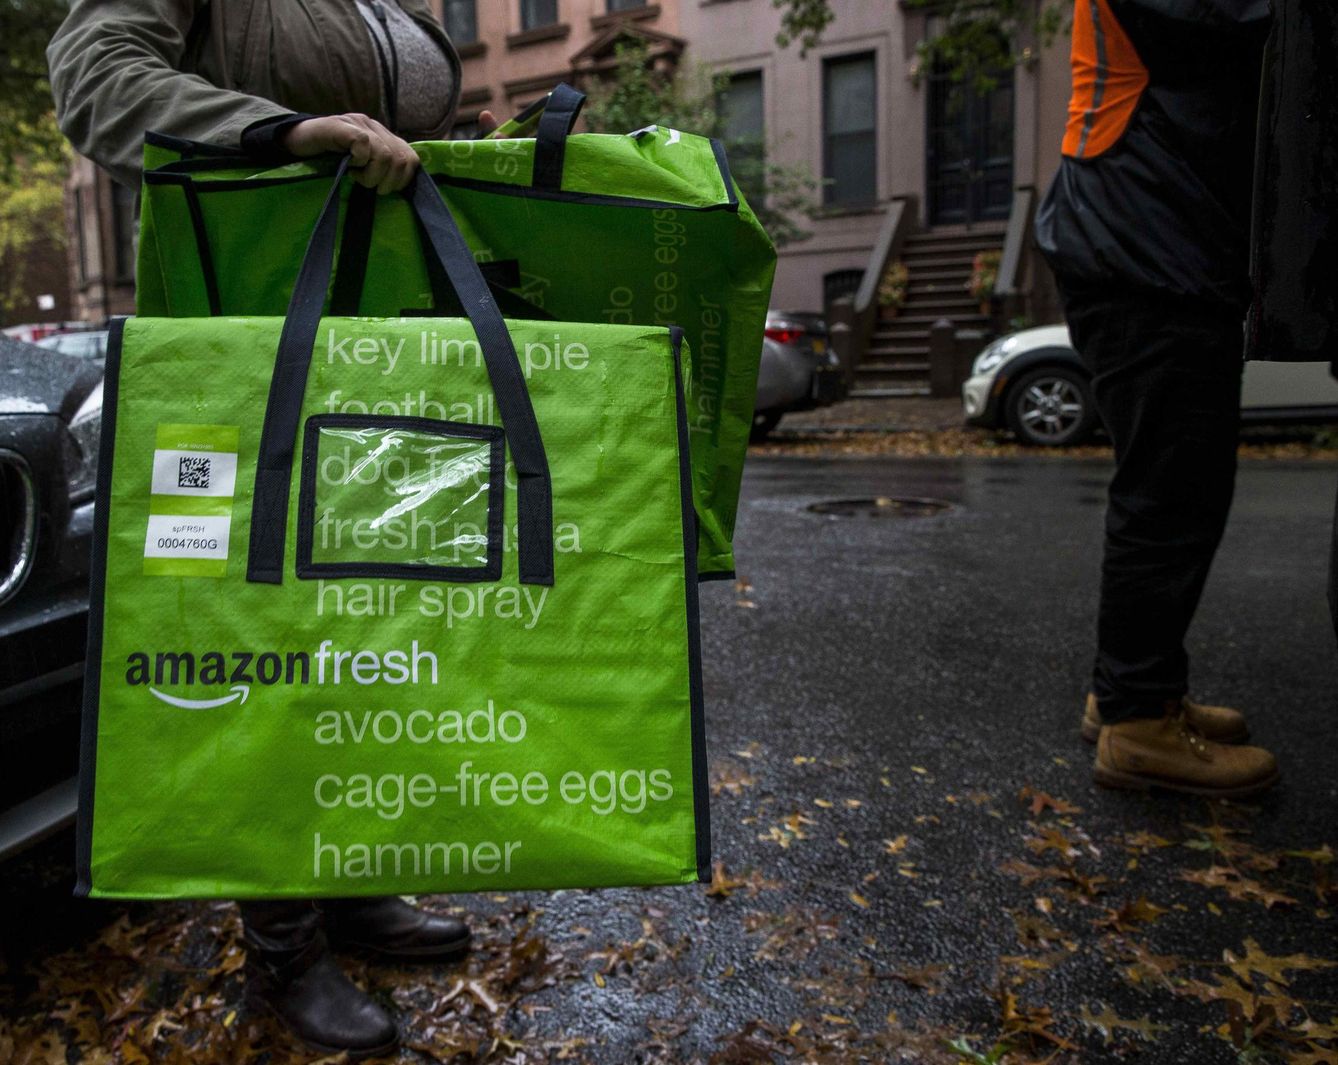 El servicio de envío de productos frescos de Amazon está disponible en otros países, como Estados Unidos. (Reuters)